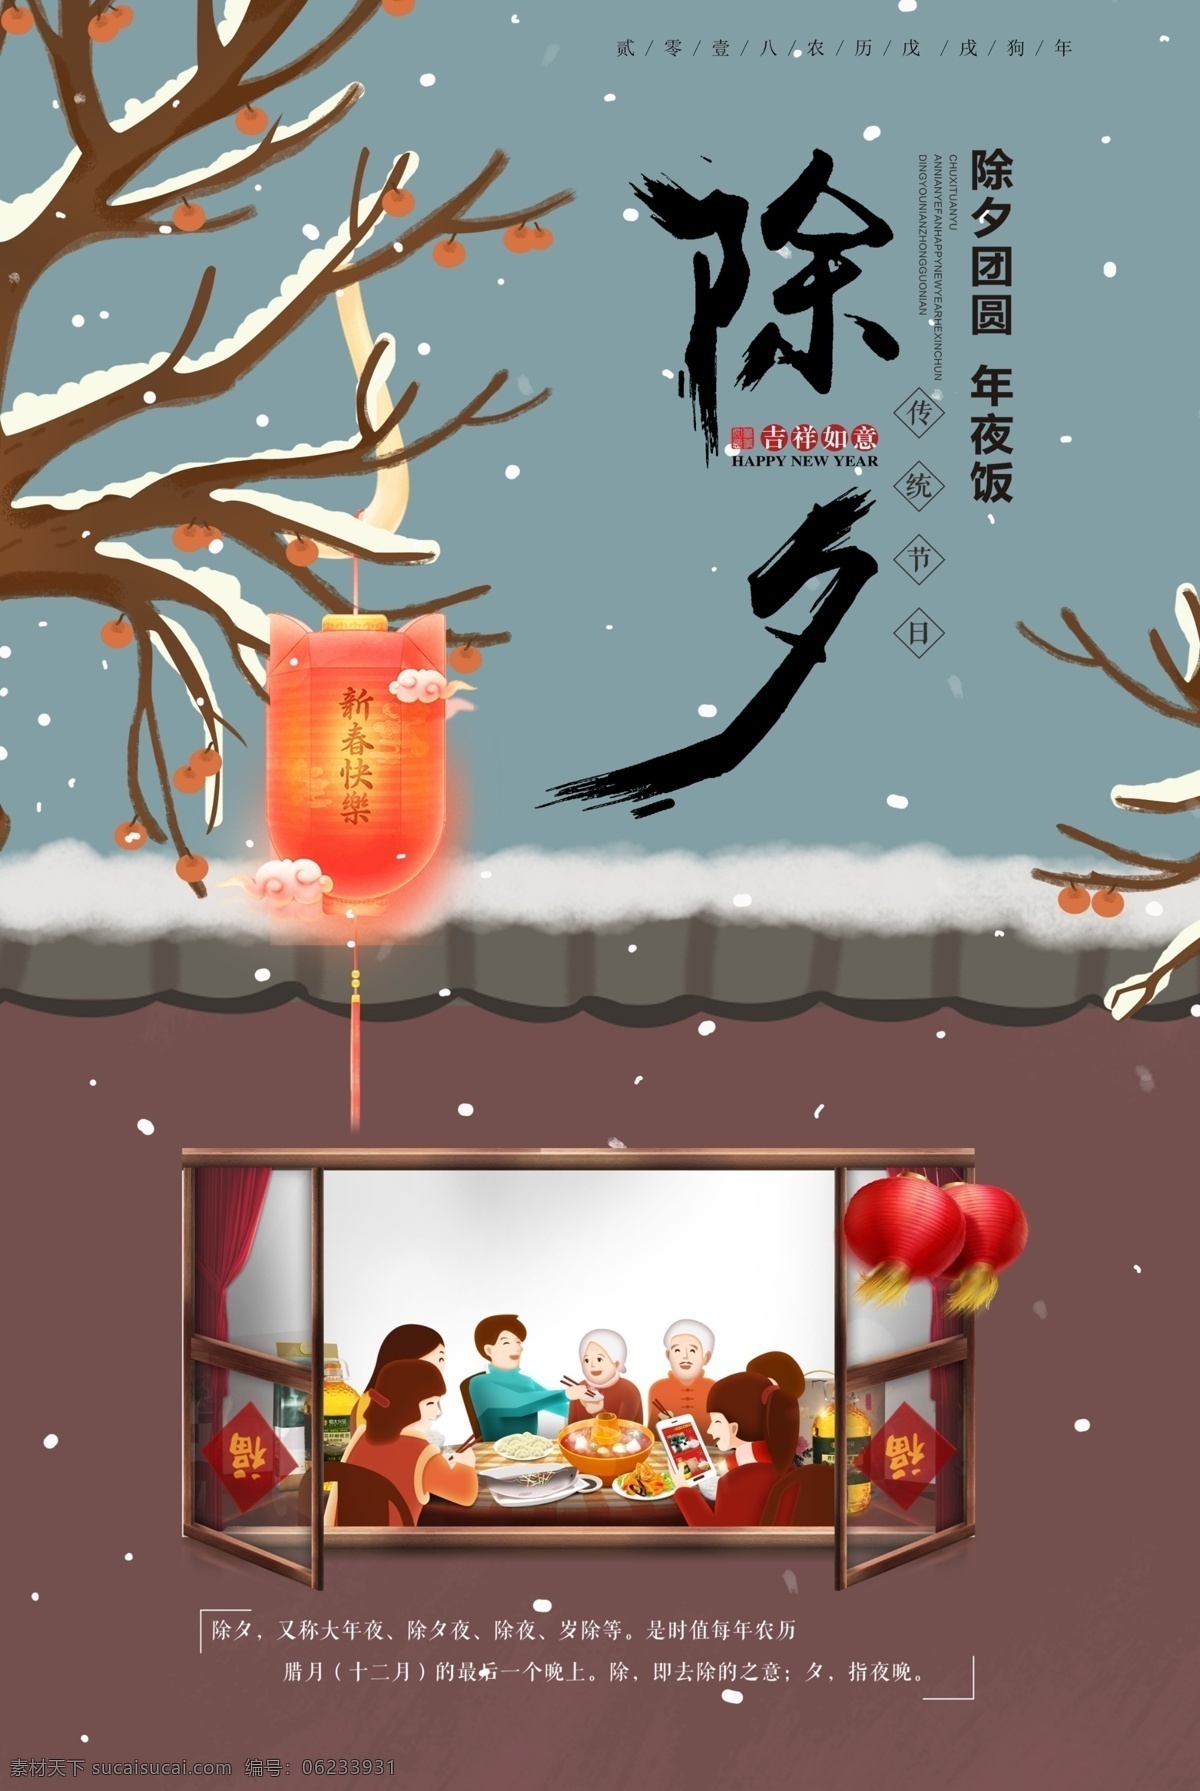 中国新年 家庭 中国人 新的一年